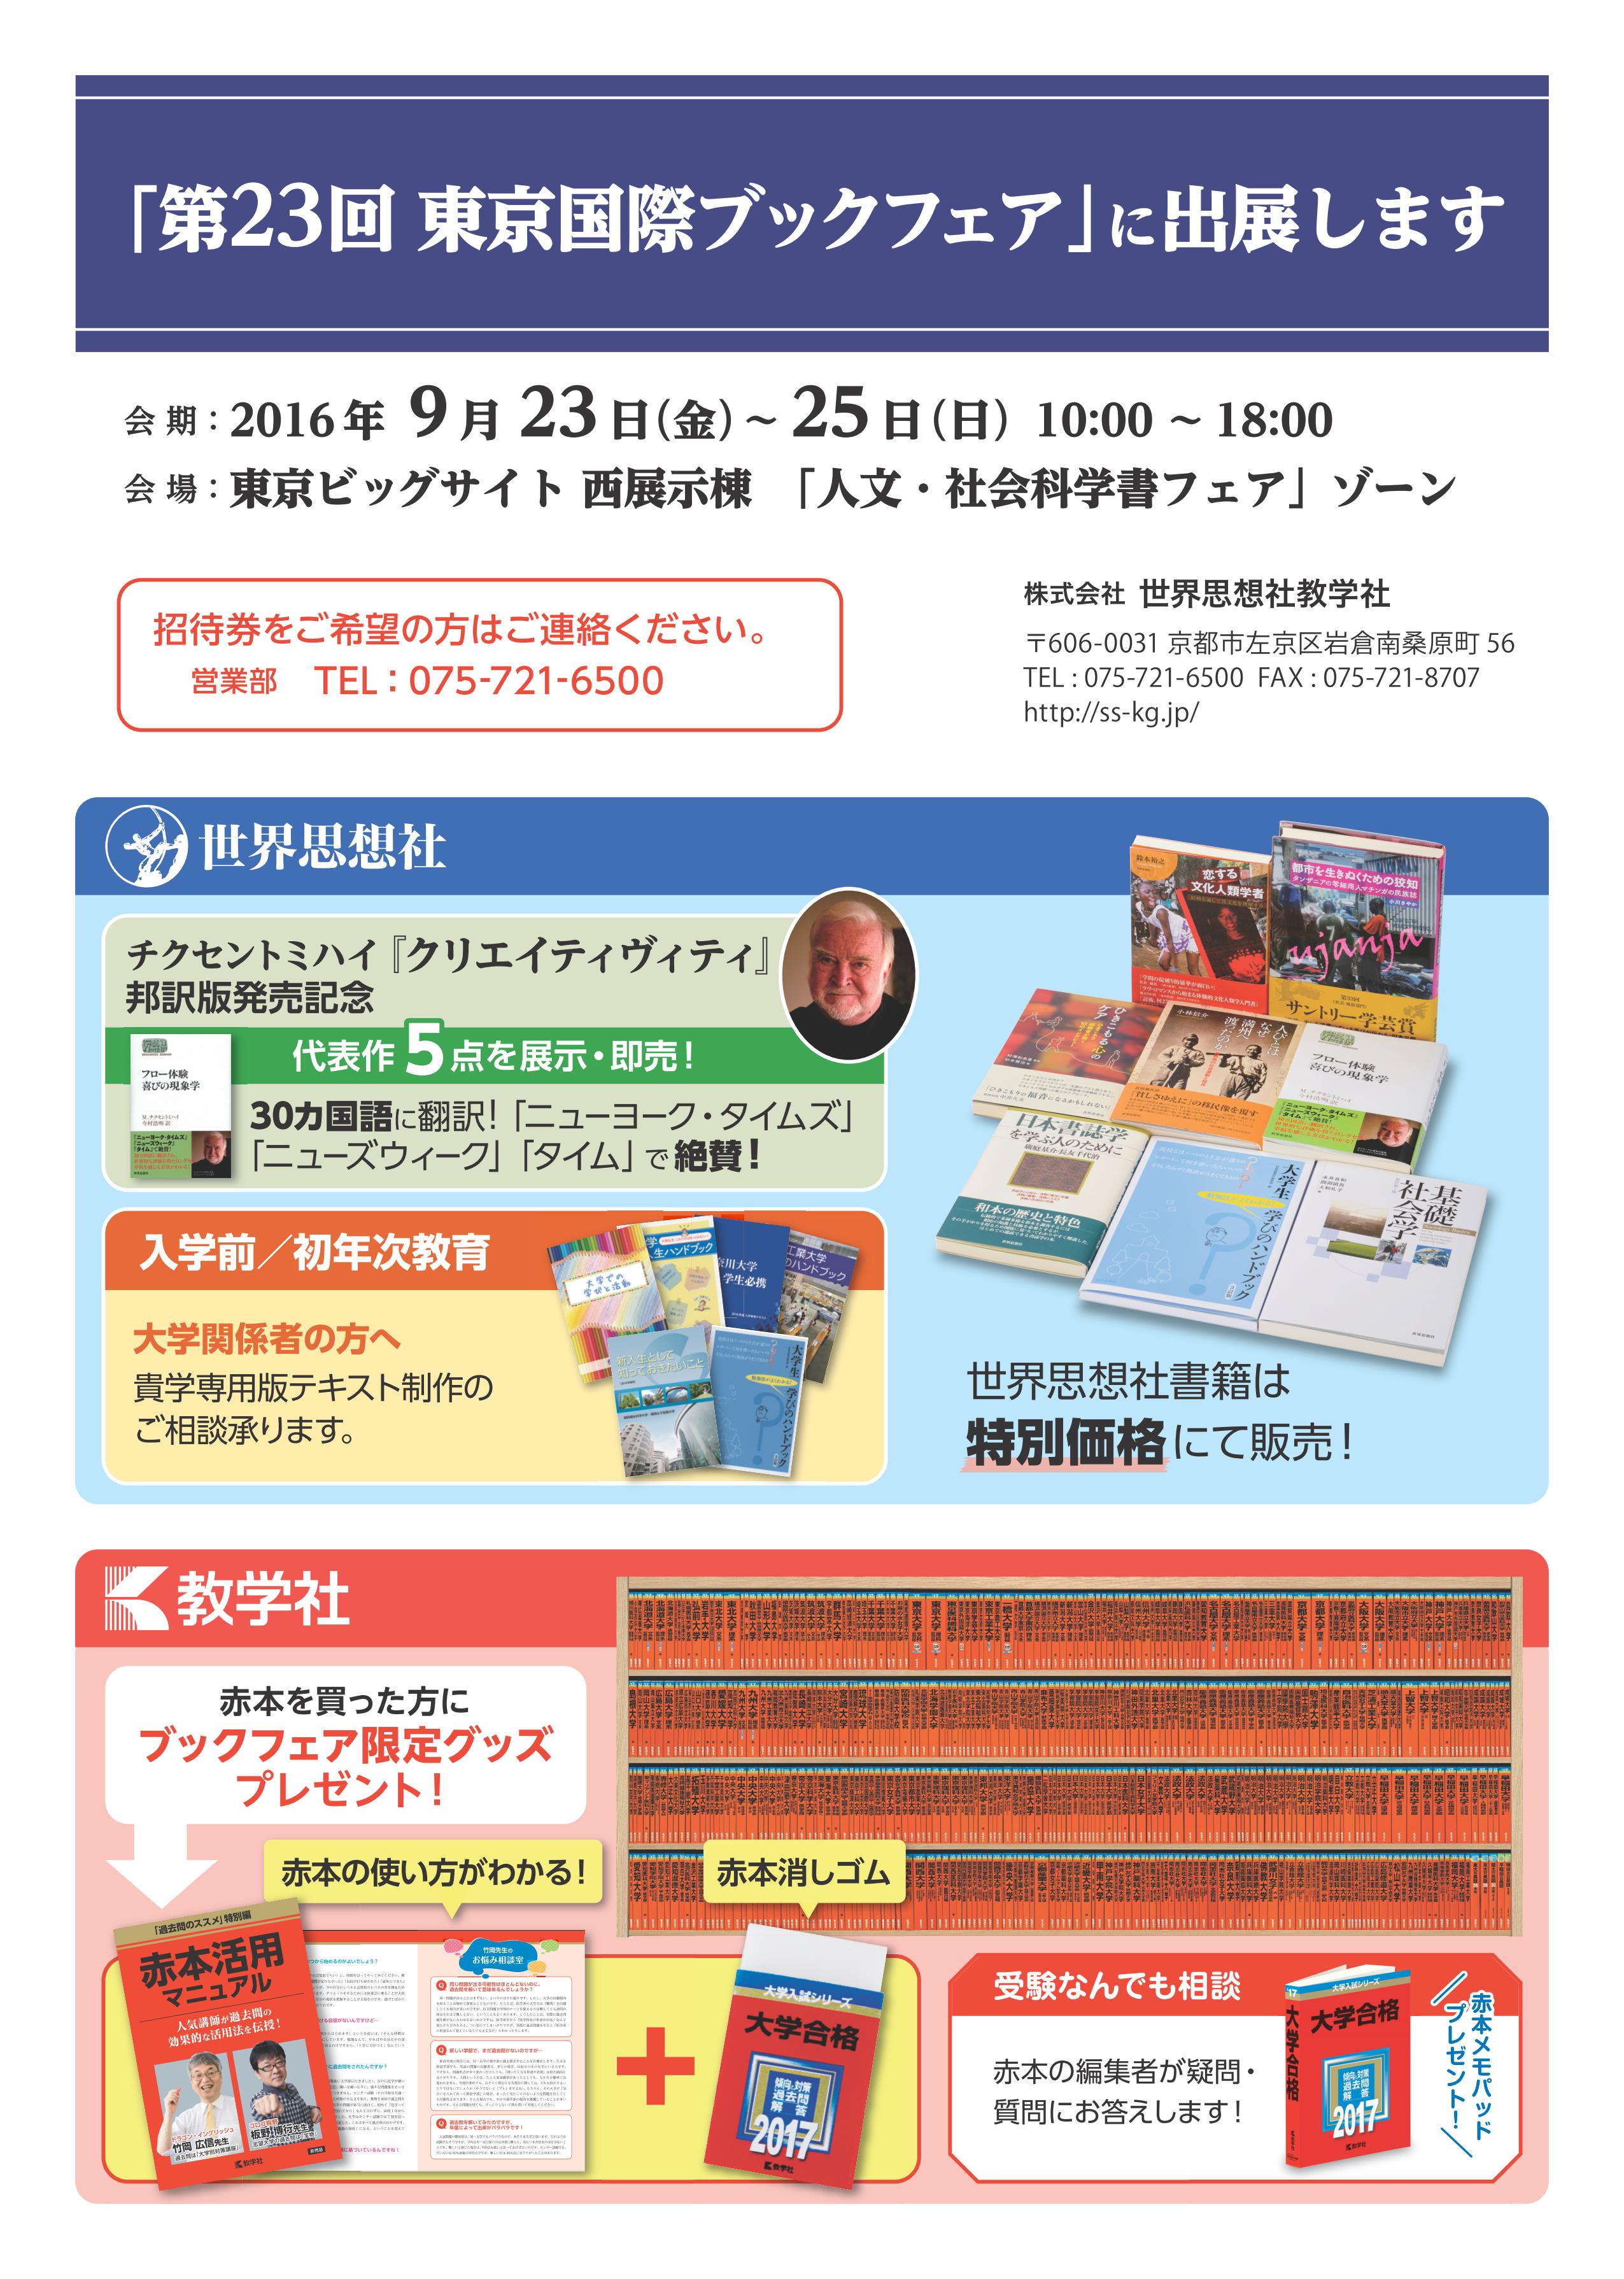 第23回 東京国際ブックフェア出展のお知らせ